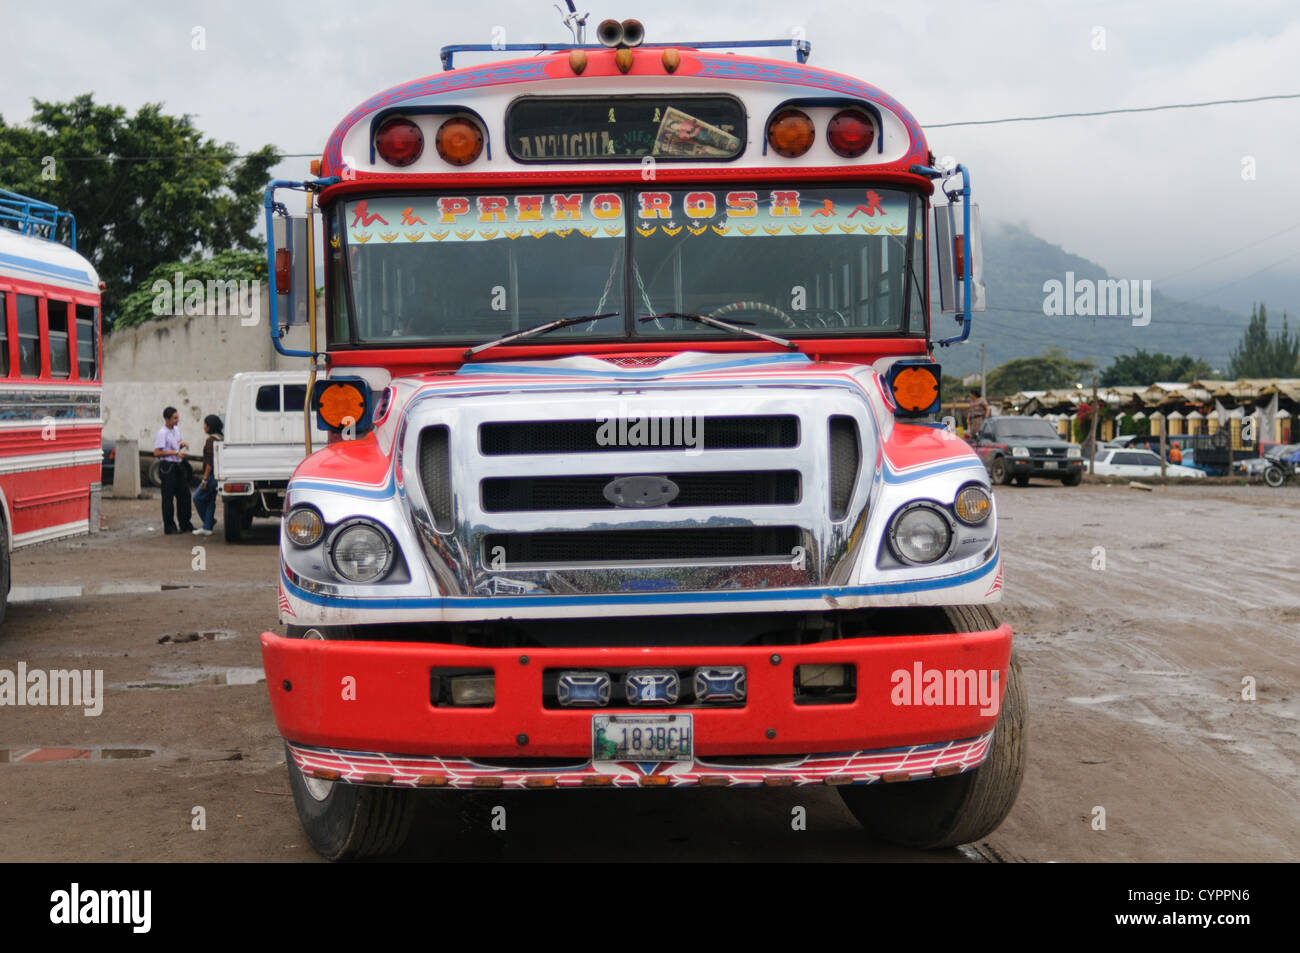 Vorne ein Huhn Bus hinter dem Mercado Municipal (Stadtmarkt) in Antigua, Guatemala. Aus diesem umfangreichen zentralen Busbahnhof strahlenförmig der Routen in Guatemala. Oft bunt bemalt, die Huhn-Busse sind nachgerüsteten amerikanische Schulbusse und bieten ein günstiges Transportmittel im ganzen Land. Stockfoto